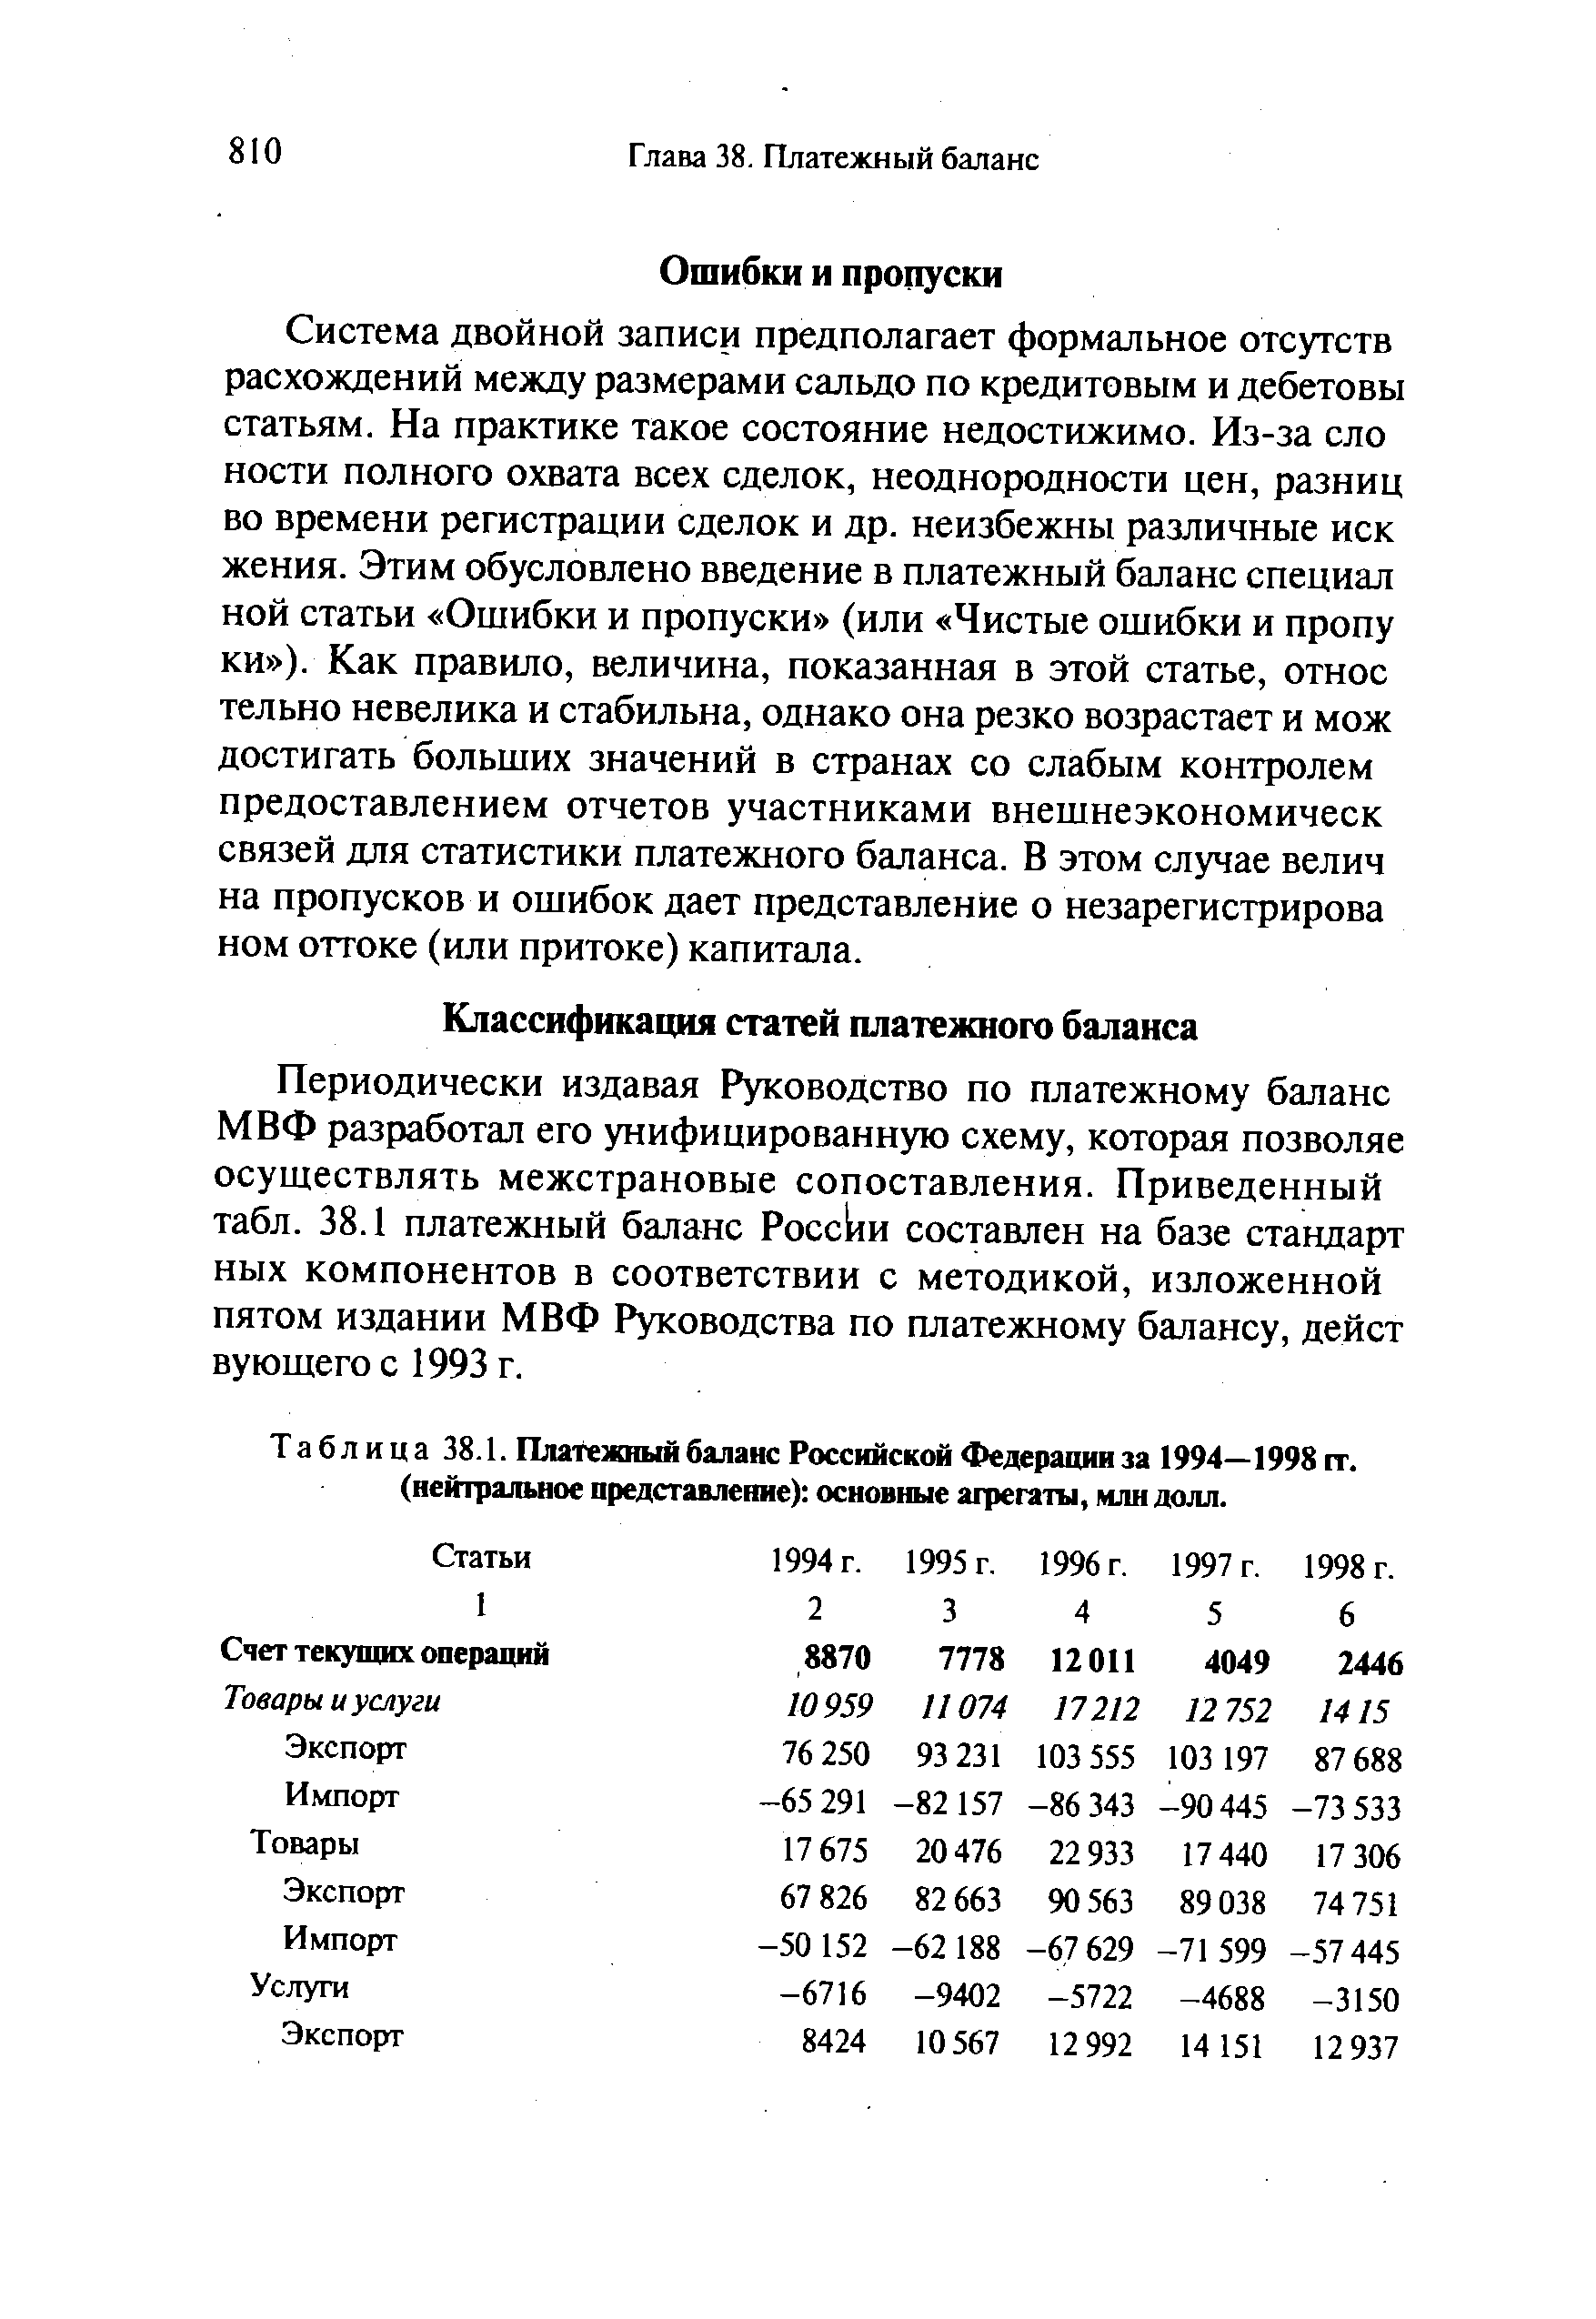 Таблица 38.1. Платежный баланс Российской Федерации за 1994—1998 гг. (нейтральное представление) основные агрегаты, млн долл.
